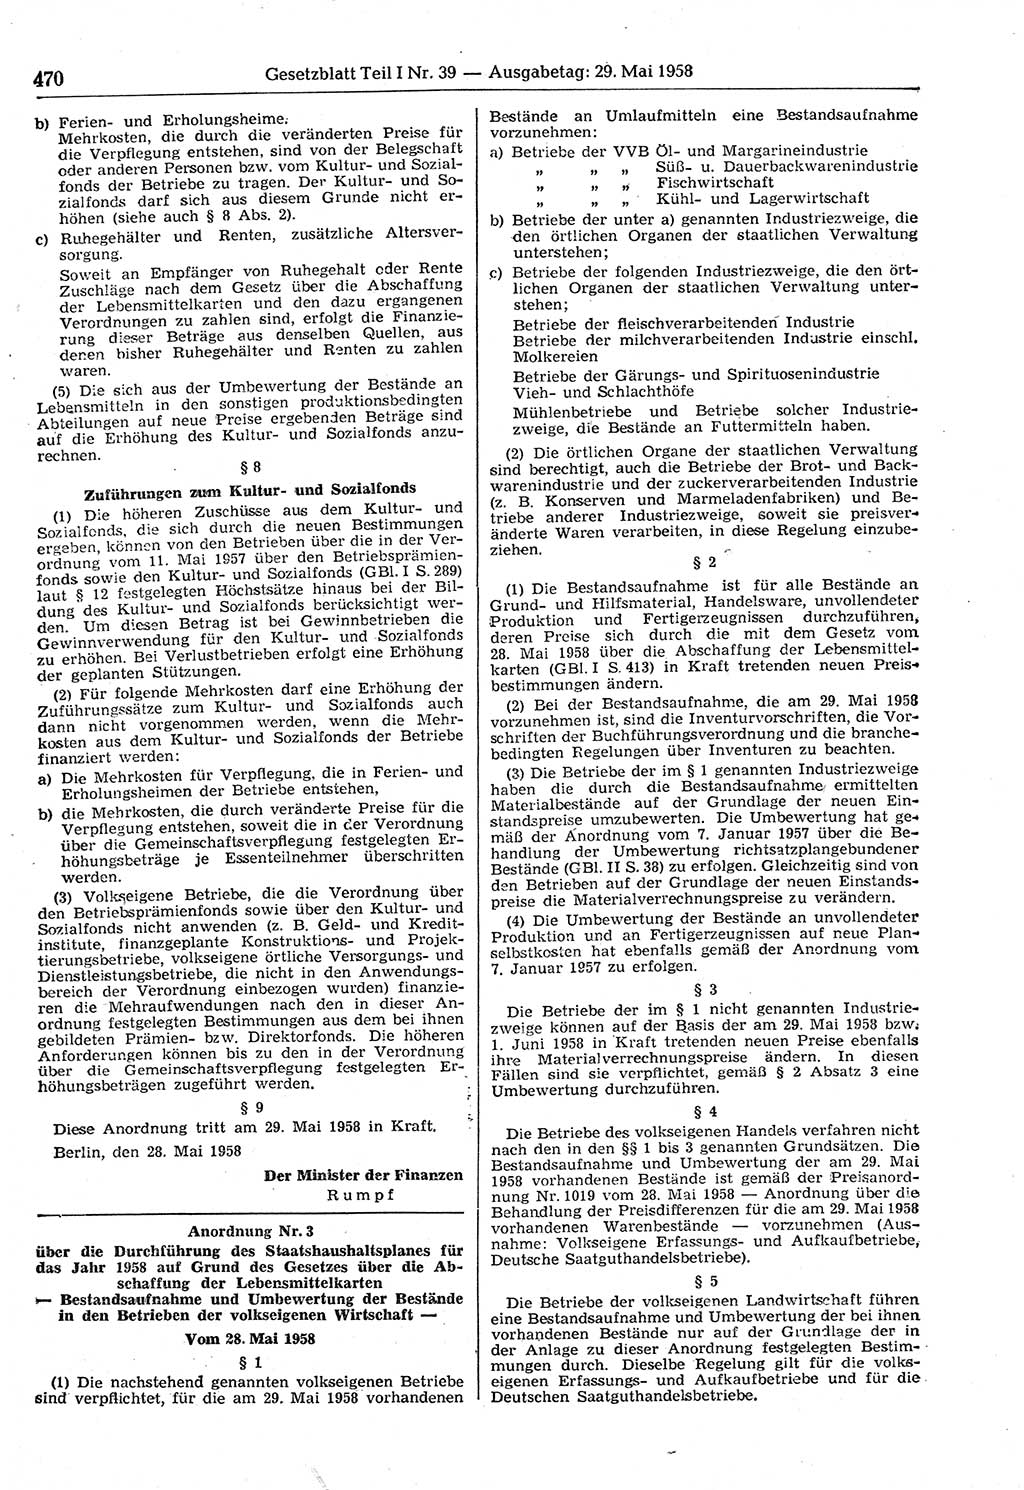 Gesetzblatt (GBl.) der Deutschen Demokratischen Republik (DDR) Teil â… 1958, Seite 470 (GBl. DDR â… 1958, S. 470)